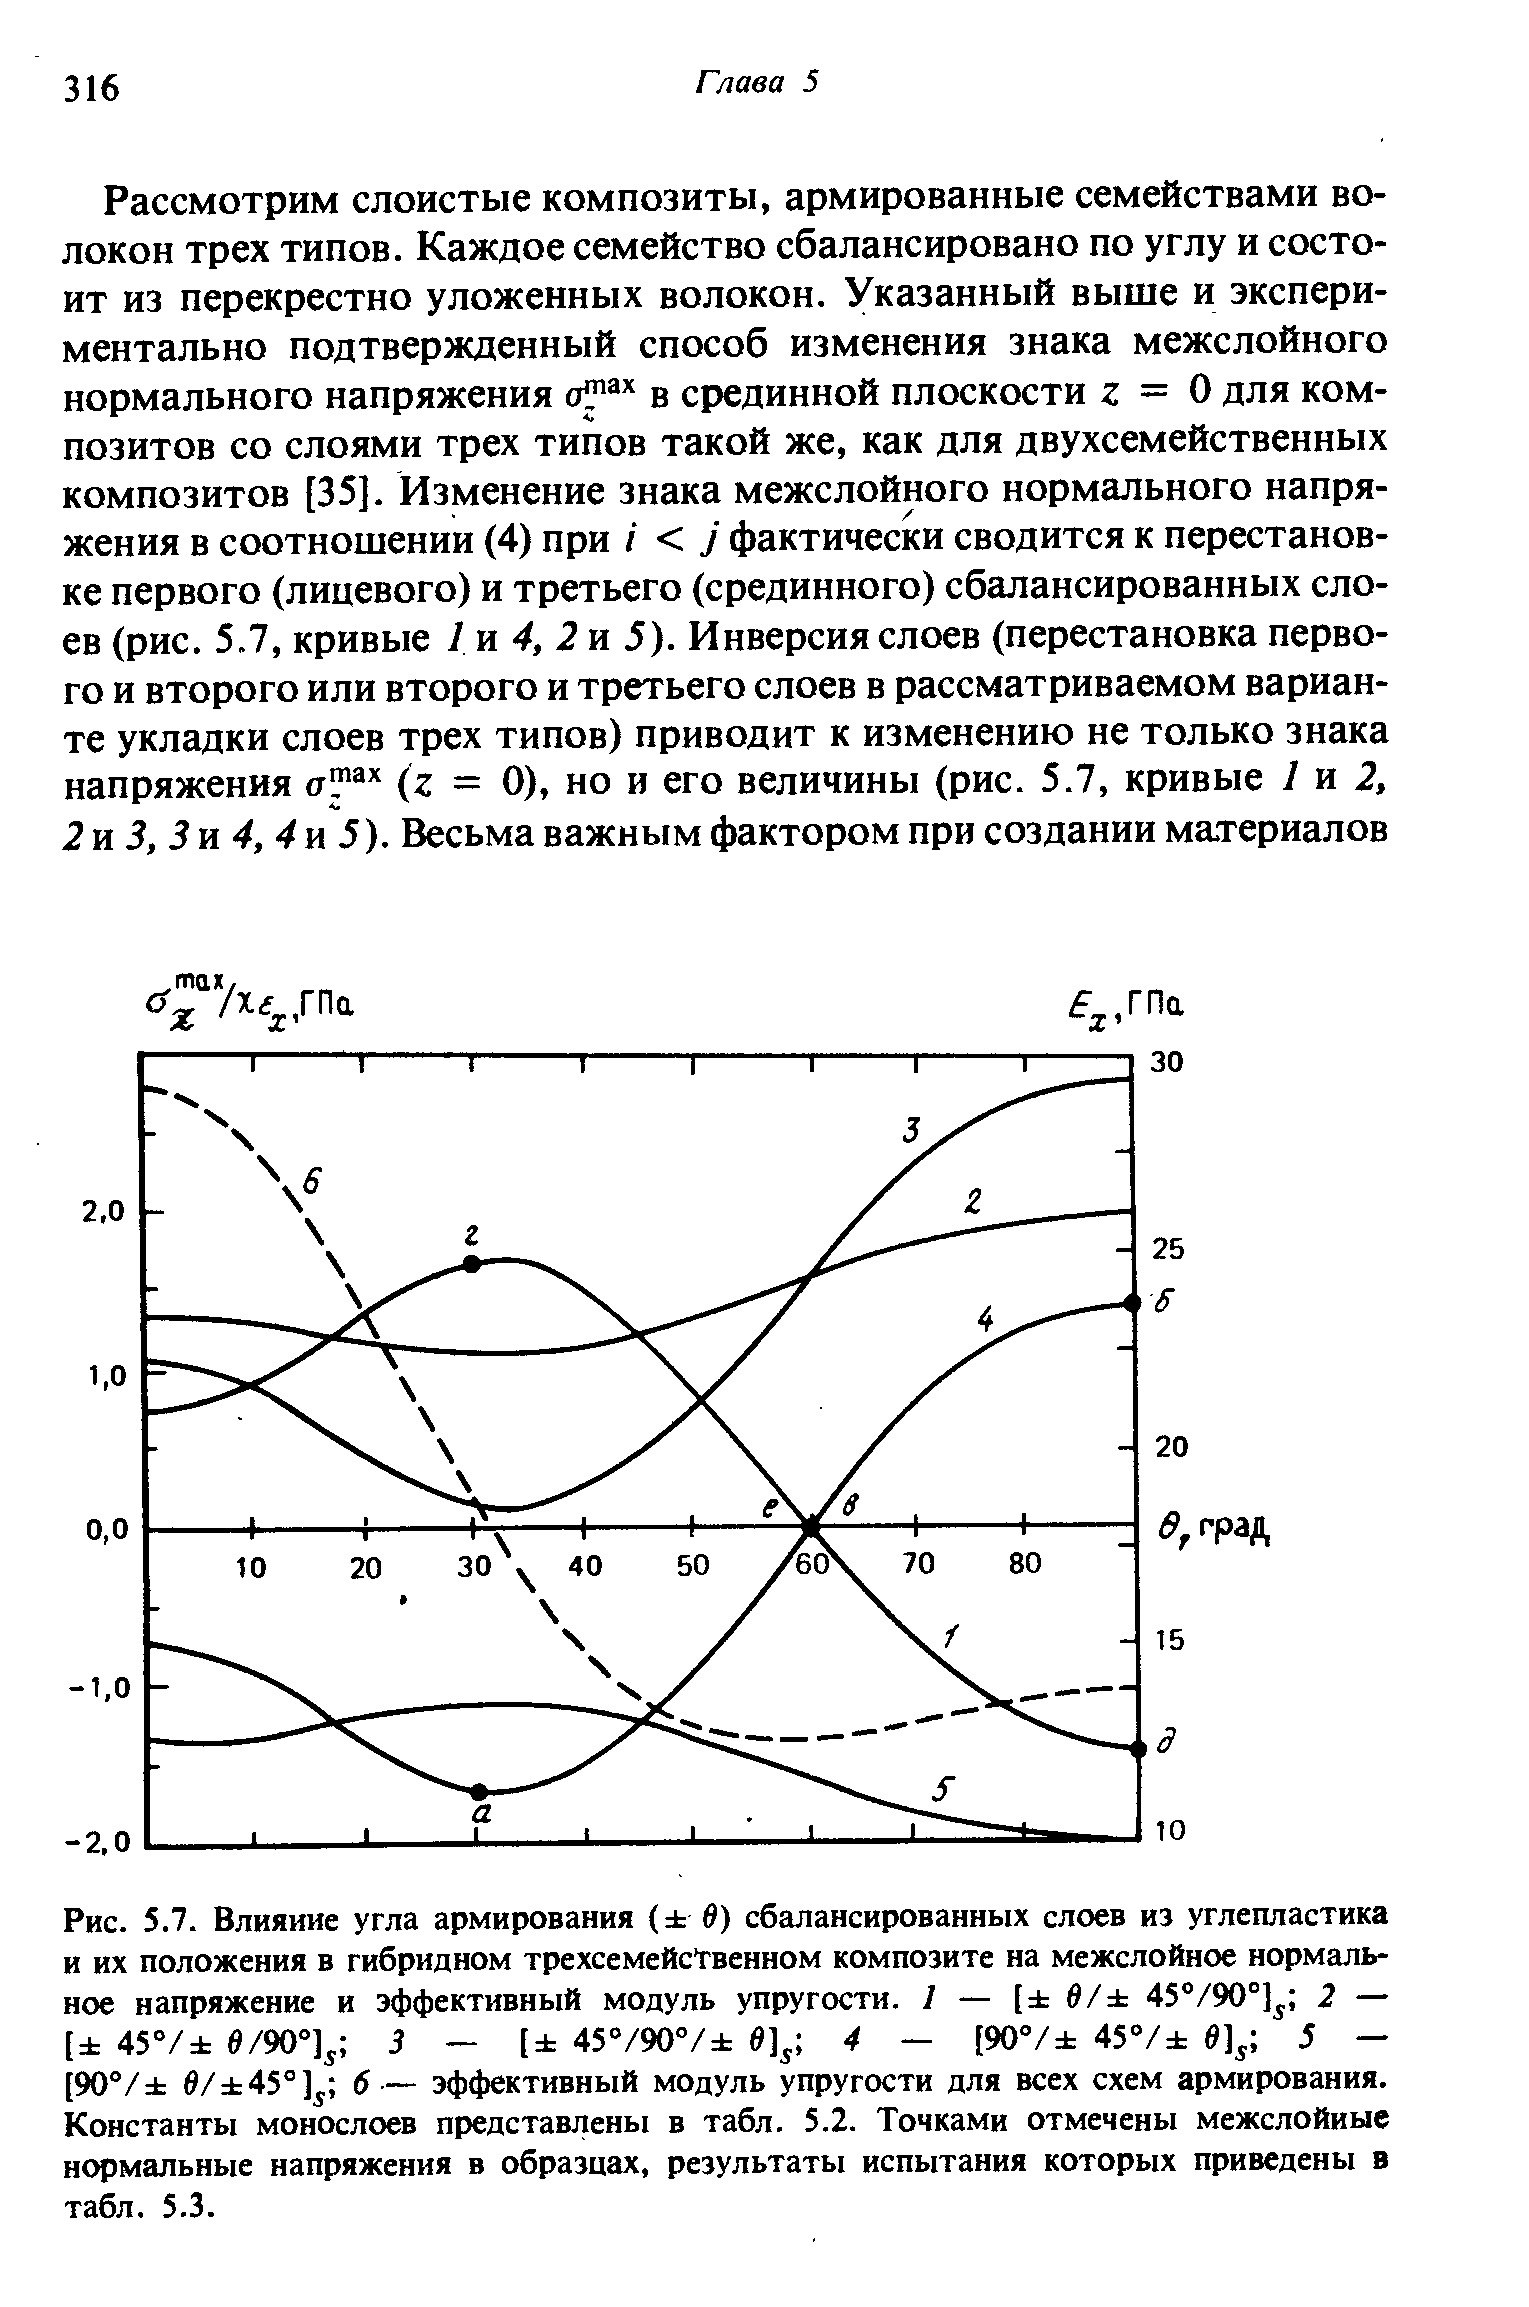 Рис. 5.7. Влияние угла армирования ( в) сбалансированных слоев из углепластика и их положения в гибридном трехсемейсТвенном композите на межслойное <a href="/info/4952">нормальное напряжение</a> и <a href="/info/37498">эффективный модуль упругости</a>. I — [ в/ 45°/90°] 2 — [ 45°/ е/90°] 5 - [ 45°/90V 4 - (90°/ 45°/ 5 — [90°/ в/ 45°] б— <a href="/info/37498">эффективный модуль упругости</a> для всех <a href="/info/330252">схем армирования</a>. Константы монослоев представлены в табл. 5.2. Точками отмечены межслойиые <a href="/info/4952">нормальные напряжения</a> в образцах, <a href="/info/677333">результаты испытания</a> которых приведены в табл. 5.3.
